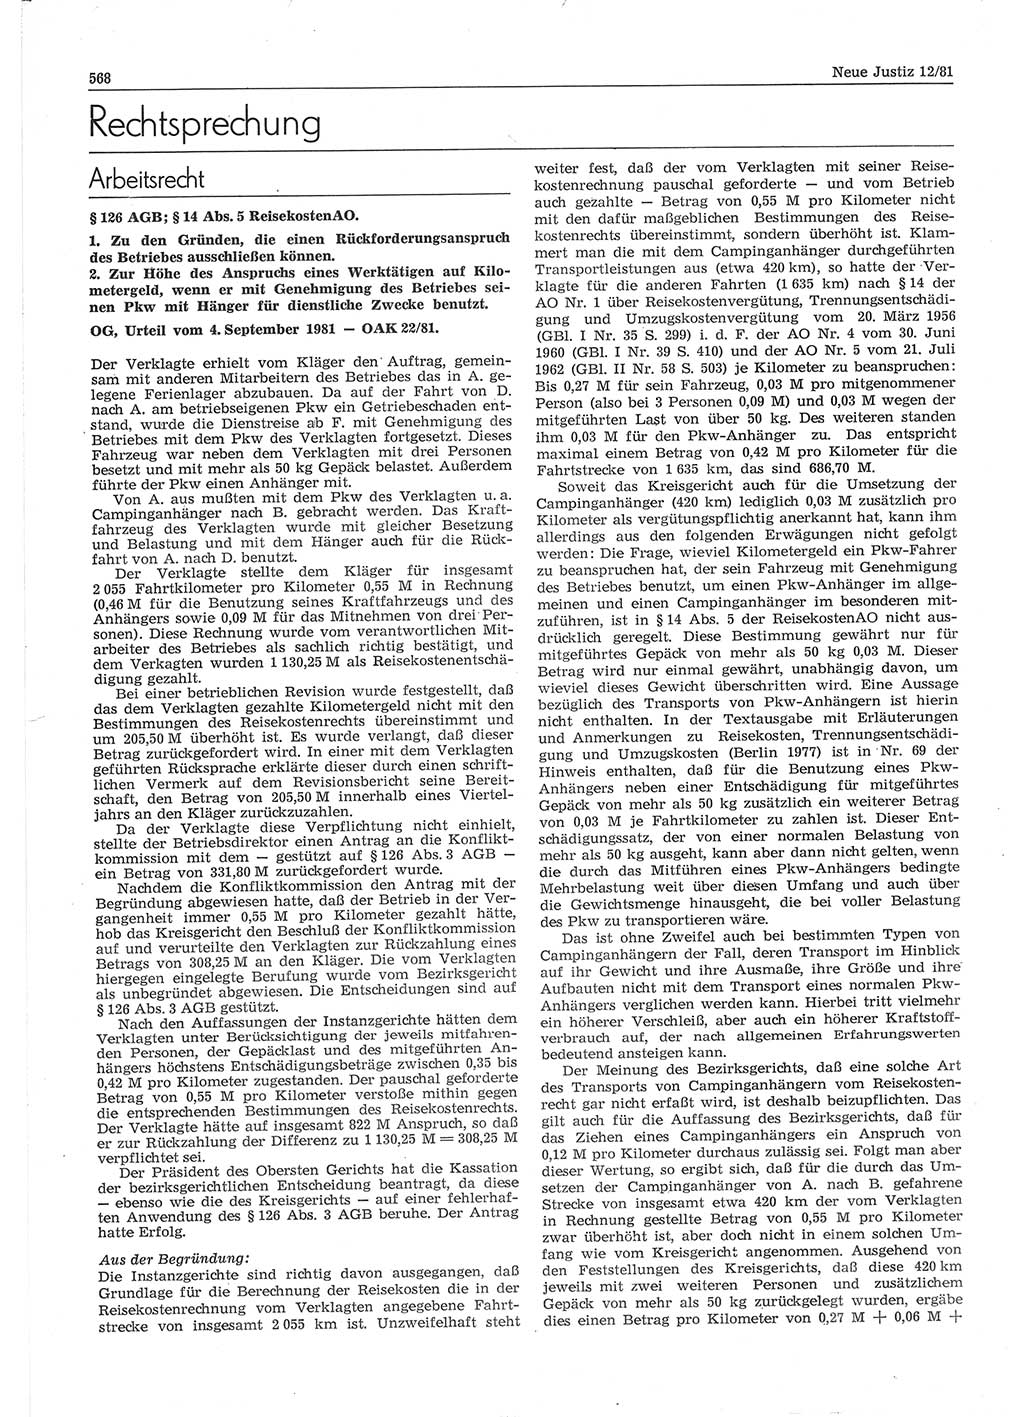 Neue Justiz (NJ), Zeitschrift für sozialistisches Recht und Gesetzlichkeit [Deutsche Demokratische Republik (DDR)], 35. Jahrgang 1981, Seite 568 (NJ DDR 1981, S. 568)